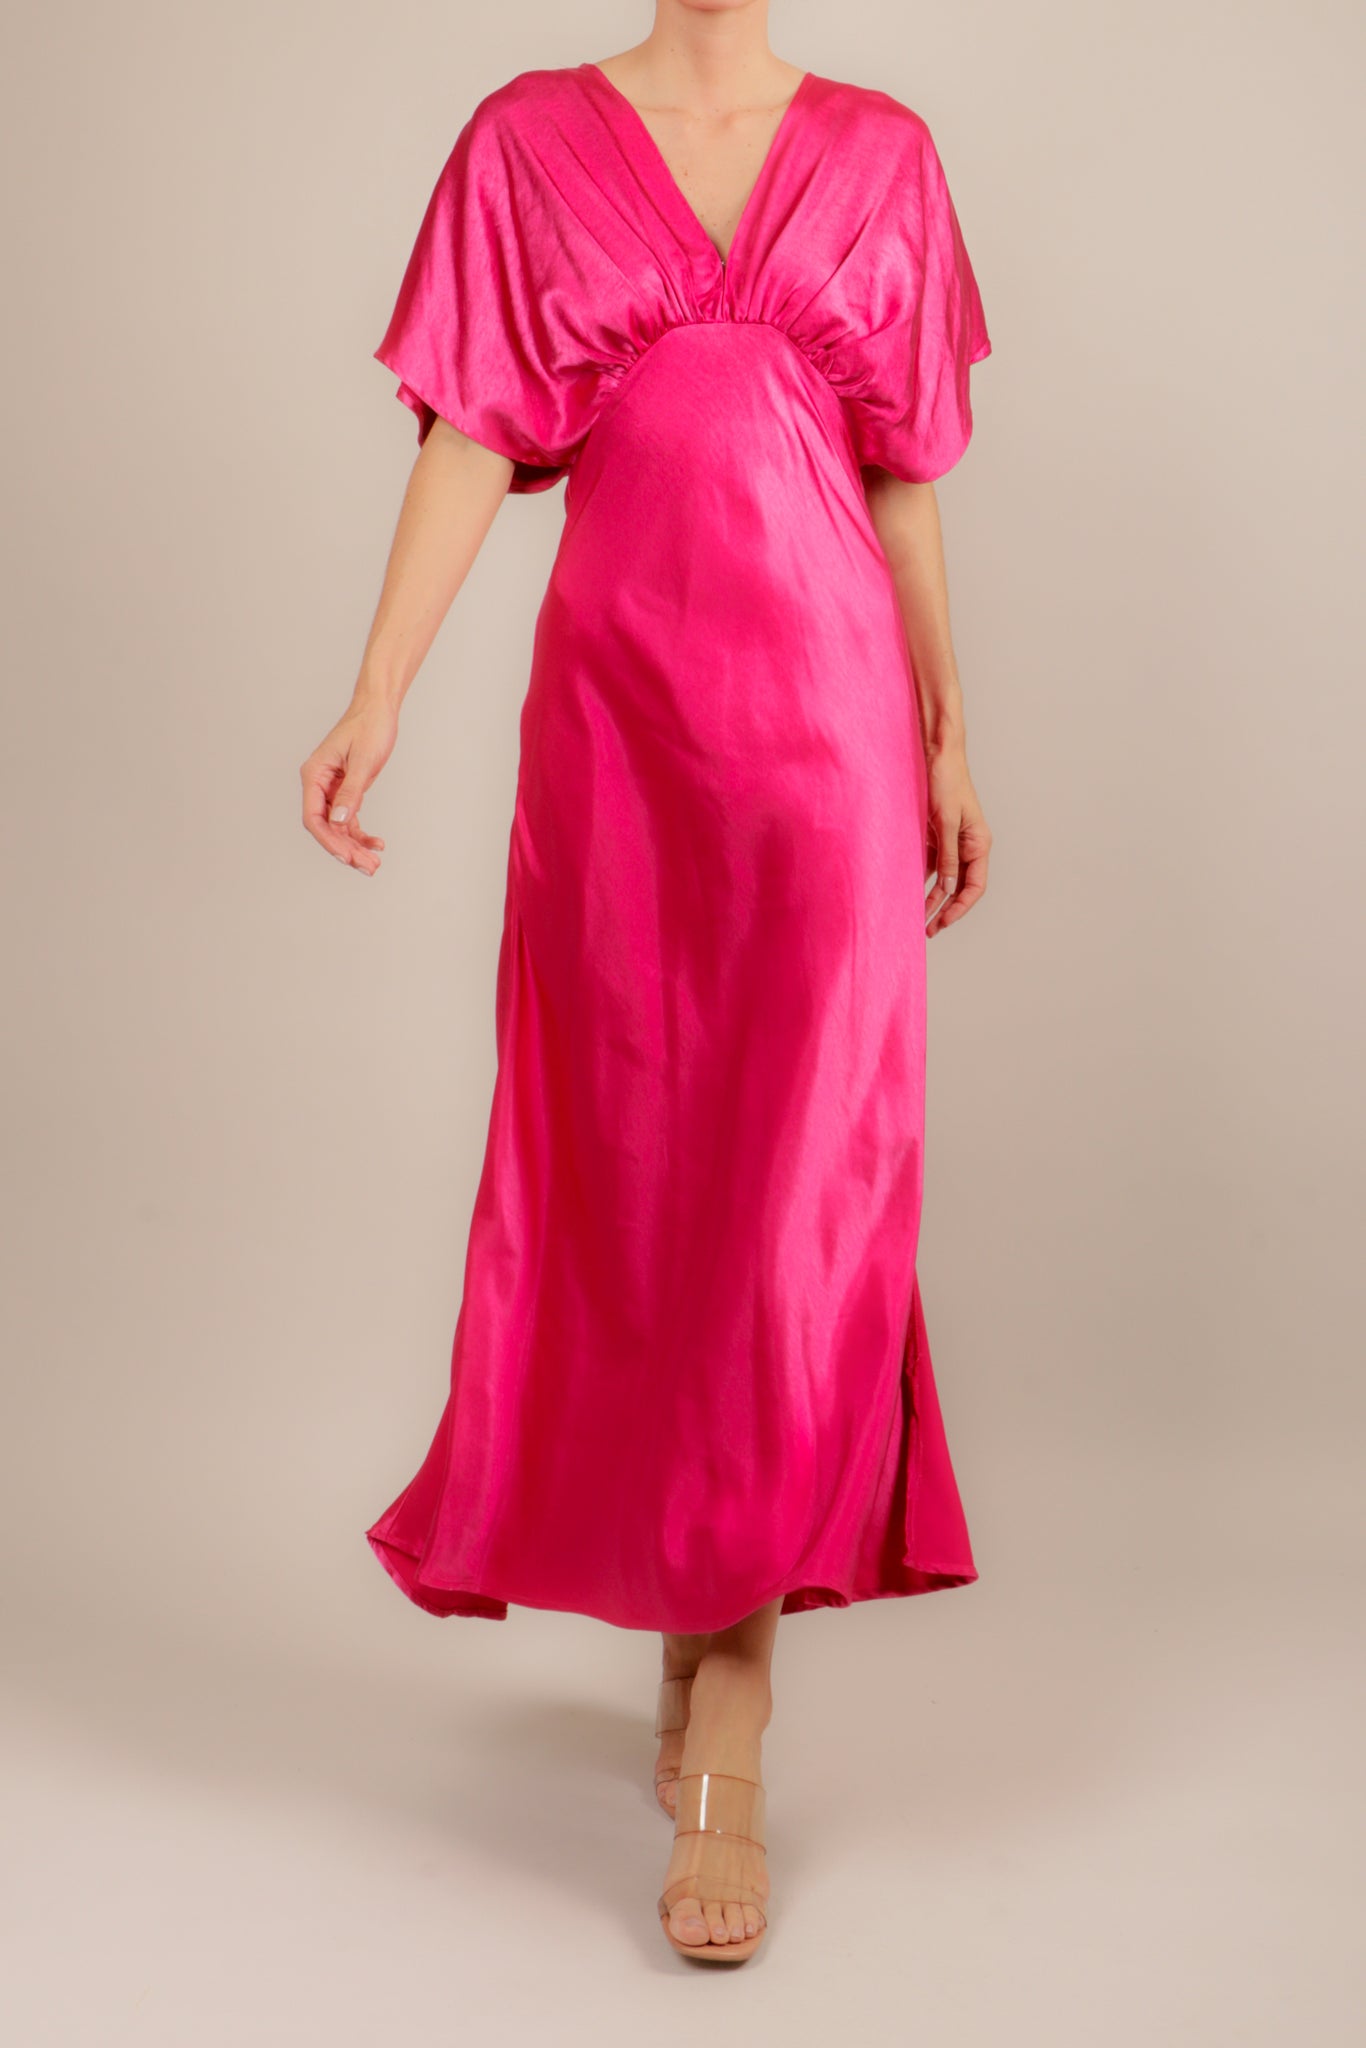 Couture District on Instagram: “Nuevos colores para tu falda de tul!! *Lila  *Rosa pastel $680,Envio Gratis #bridemaids #i…